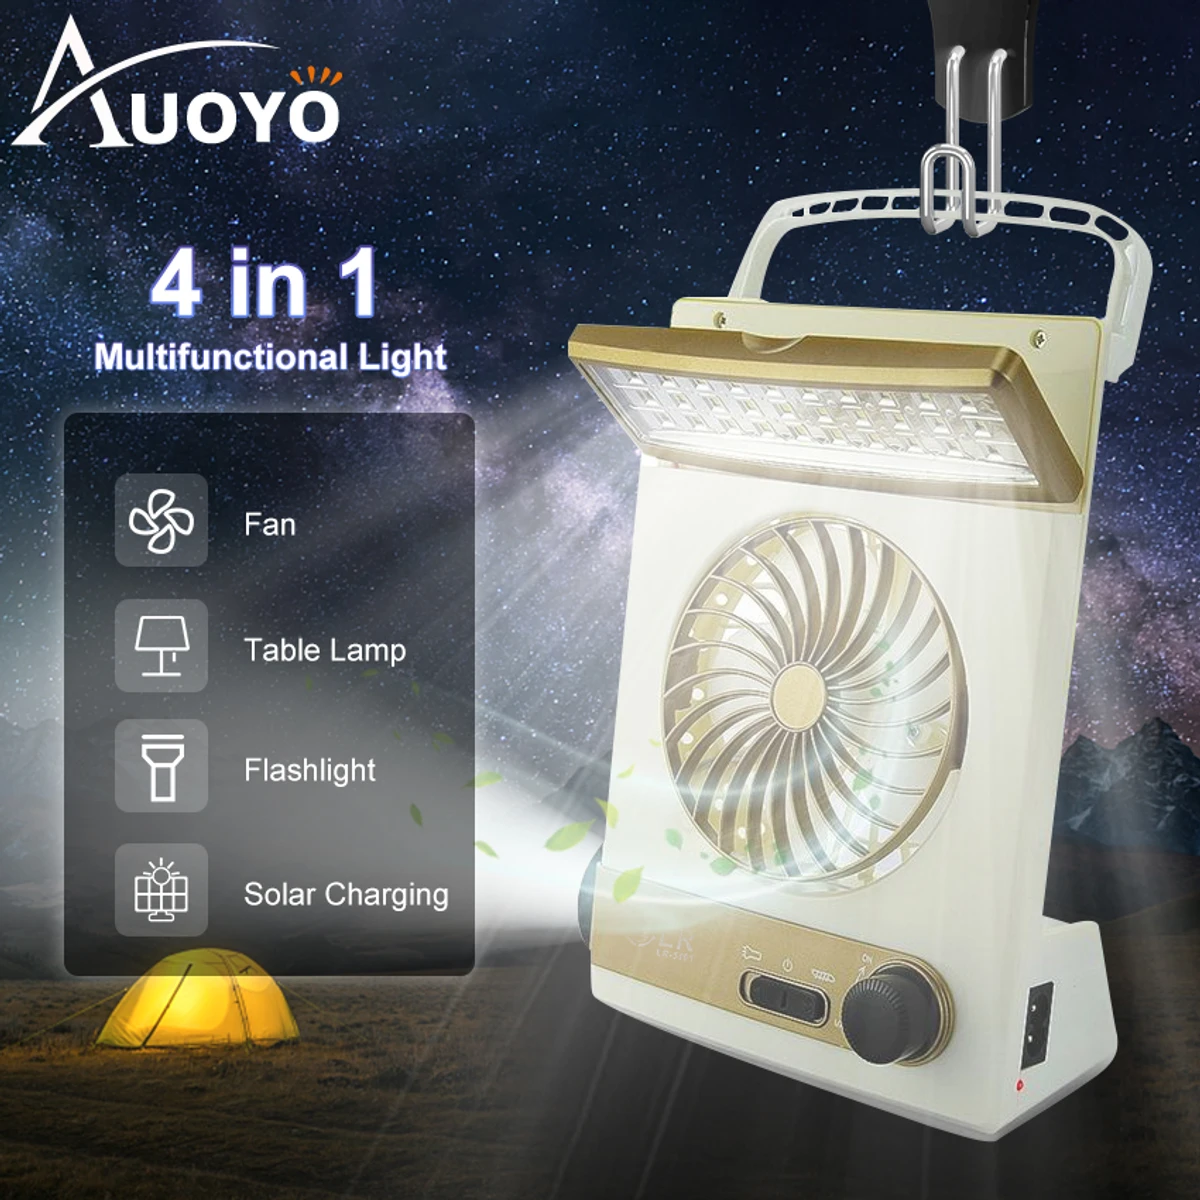 4 in 1 solar Multi Function light with fan